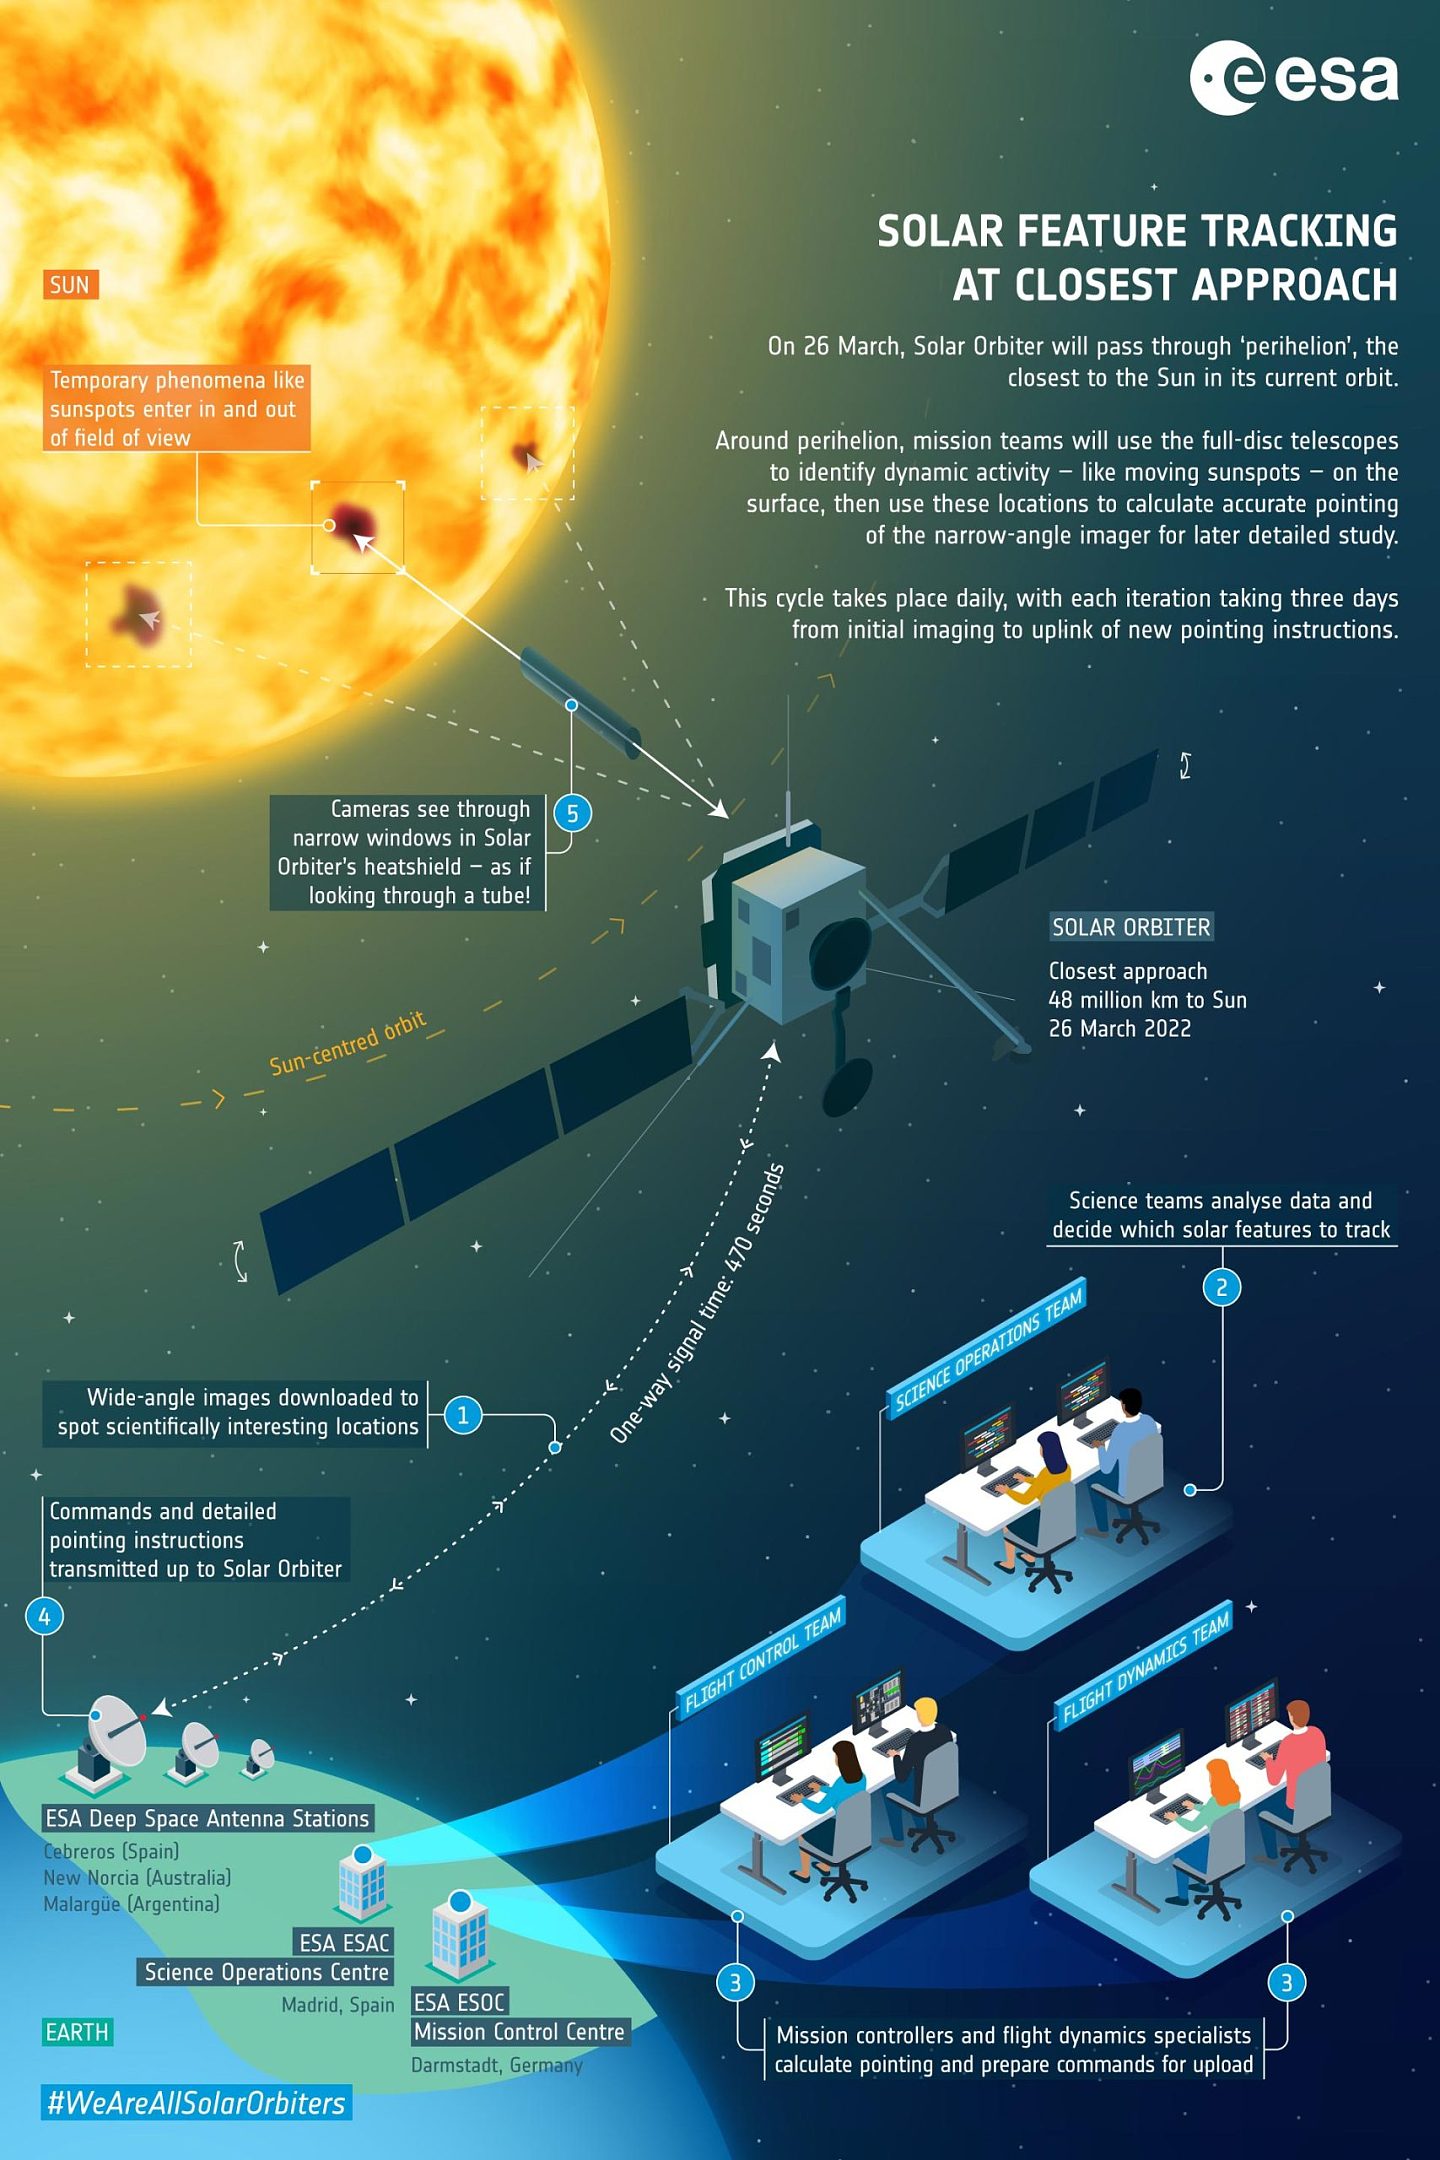 NASA/ESA太阳轨道器刚刚近距离地追踪了太阳黑子 - 1